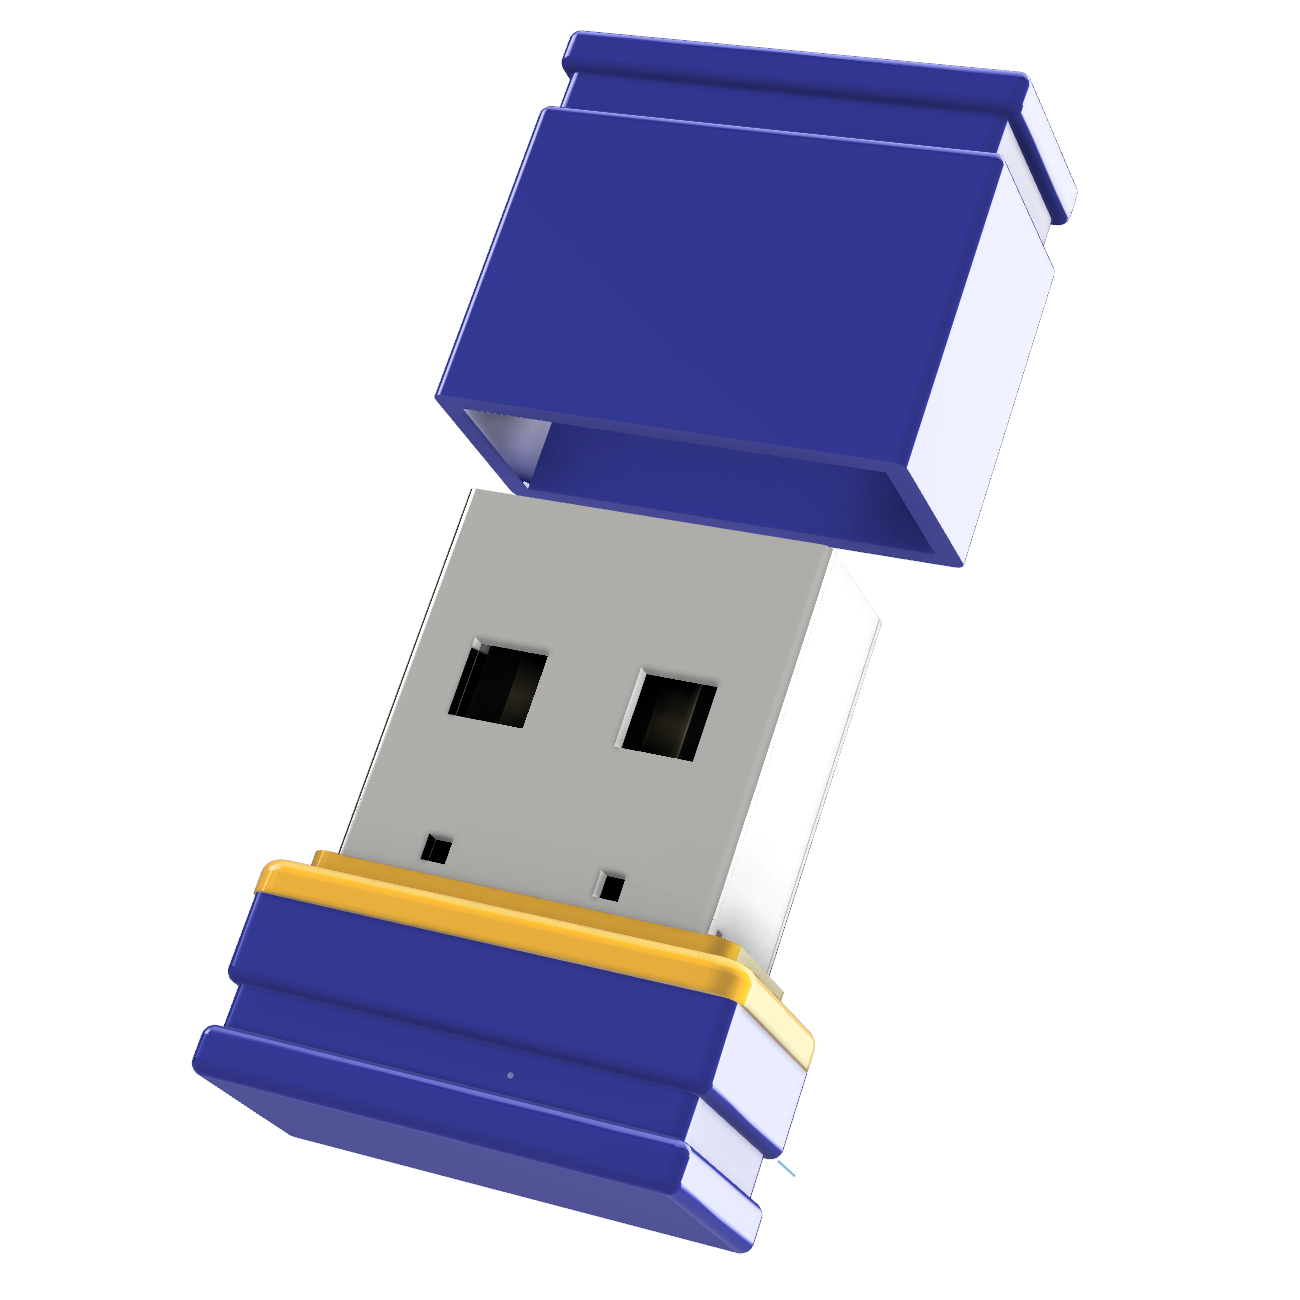 USB-Stick (Blau/Gelb, GB) P1 USB ®ULTRA Mini 64 GERMANY